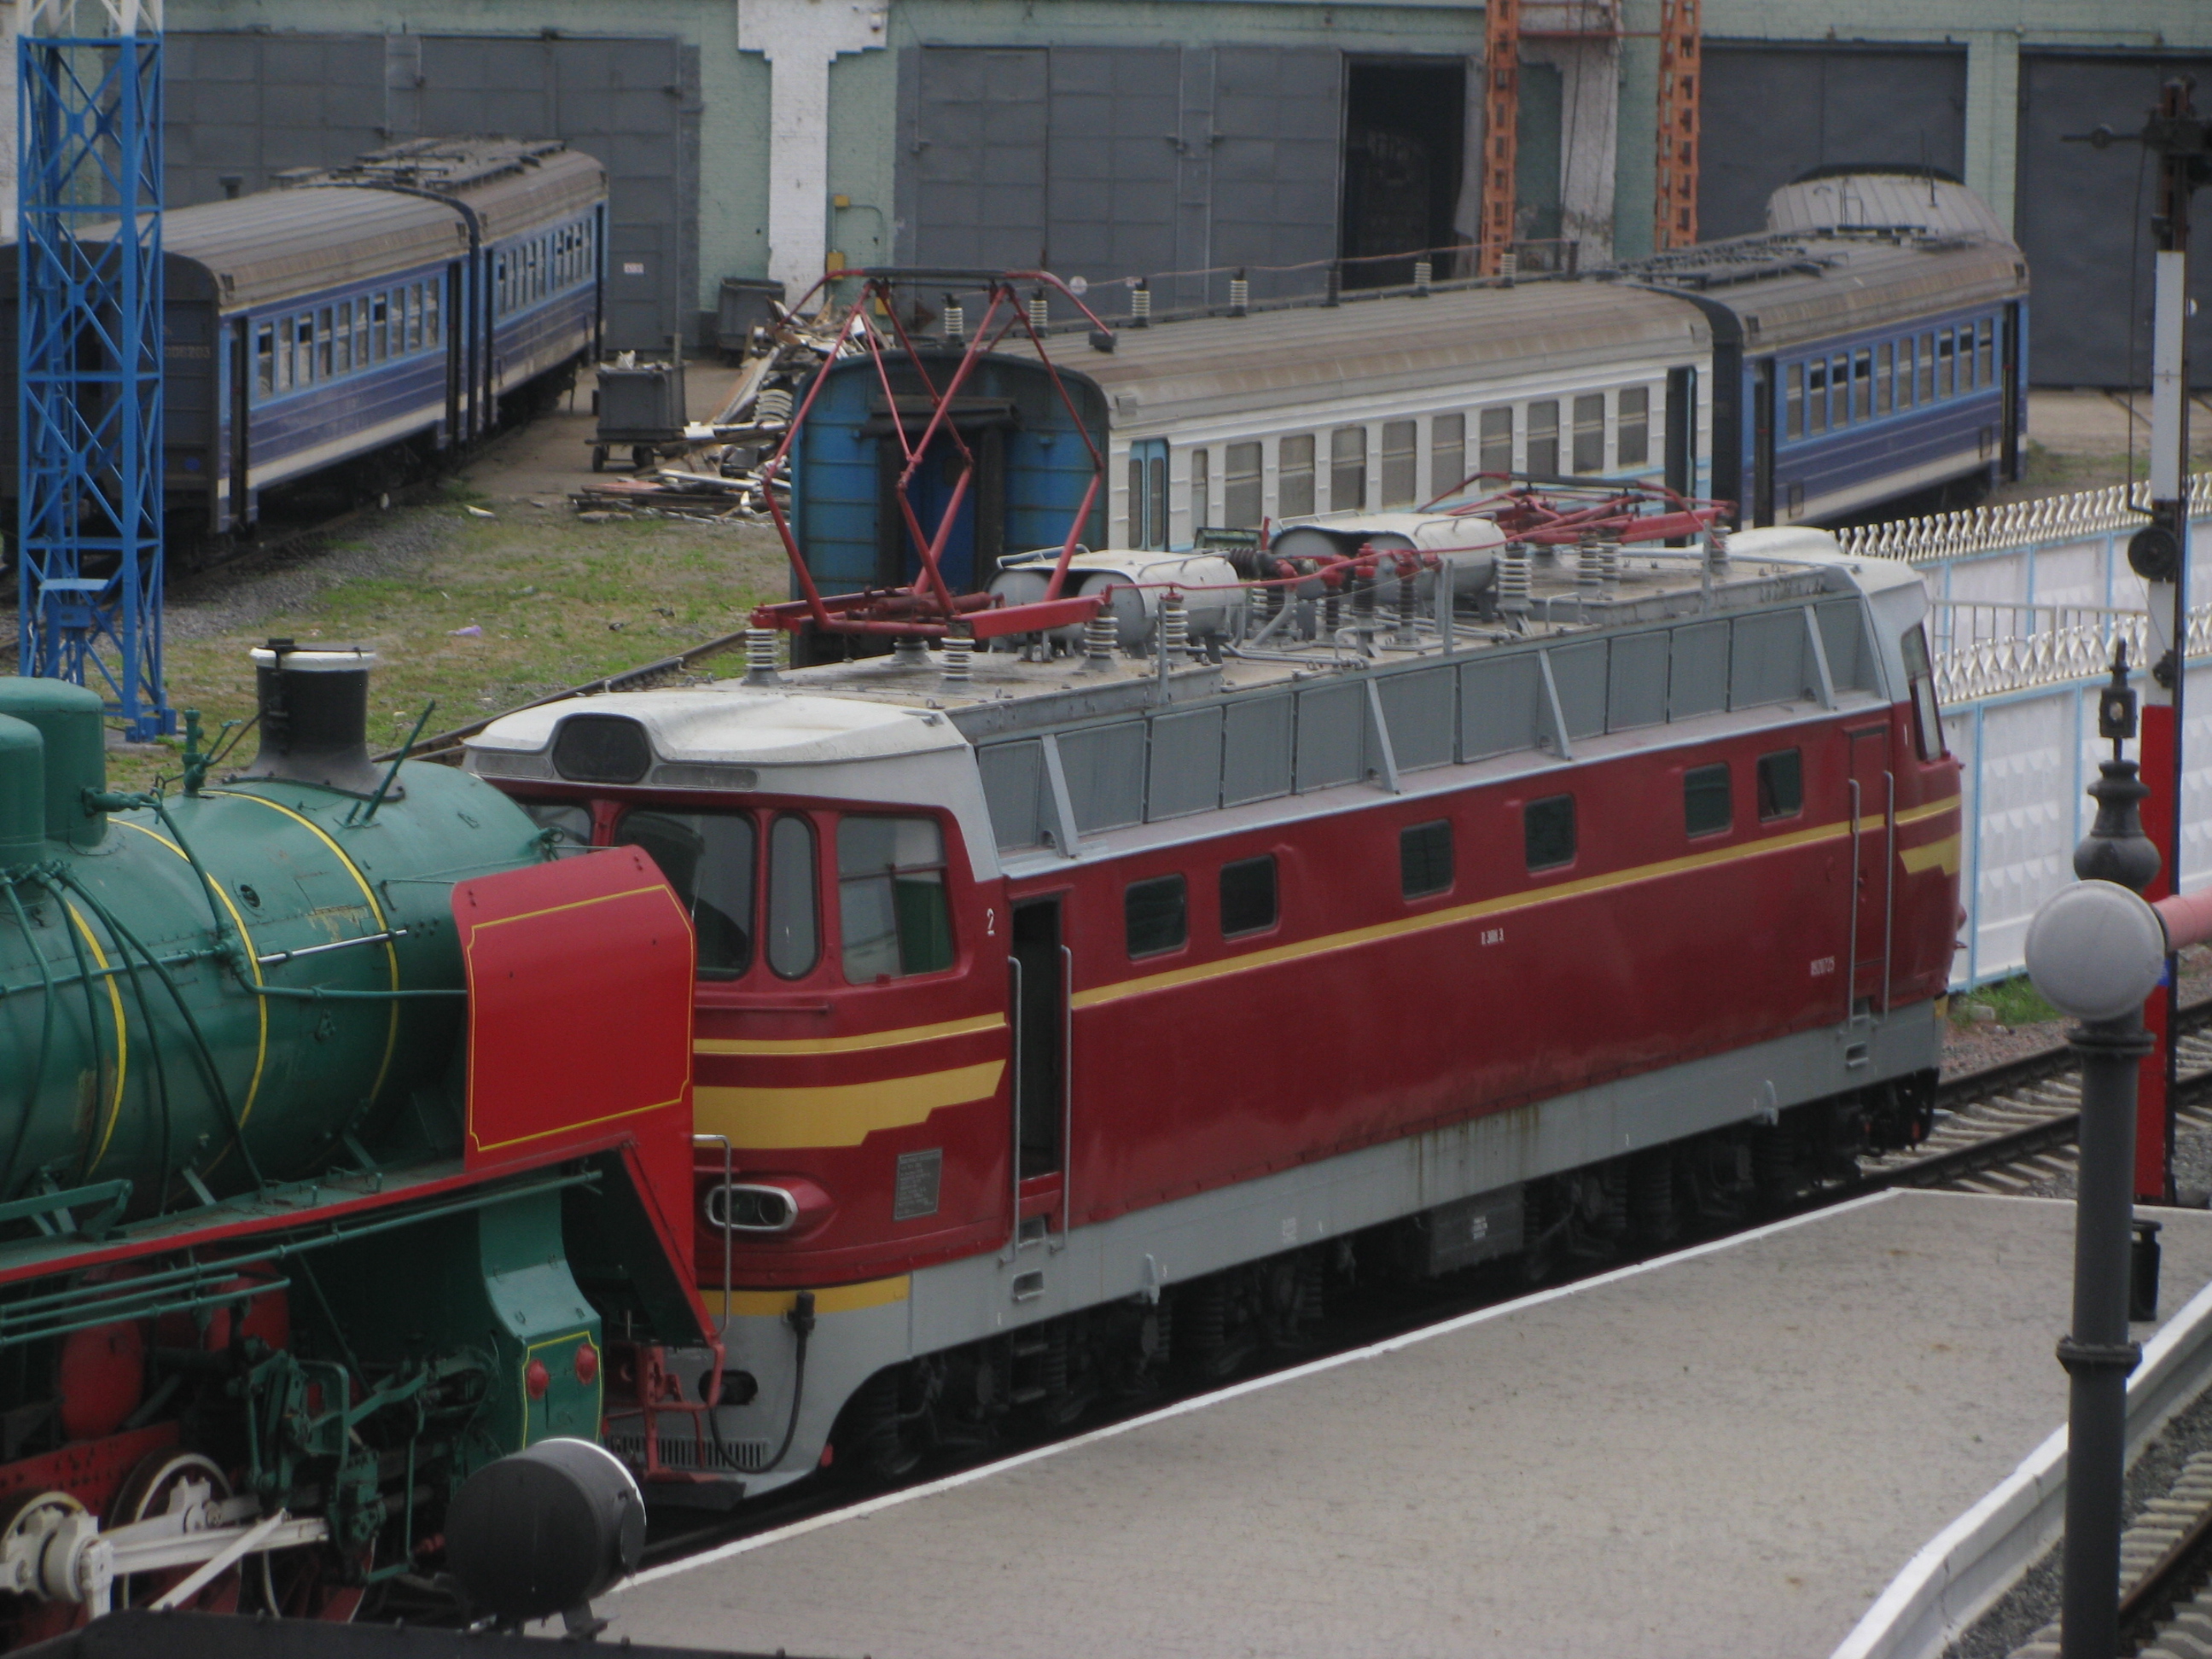 Kyjev - ČS4 (Laminatka ) v železničním muzeu